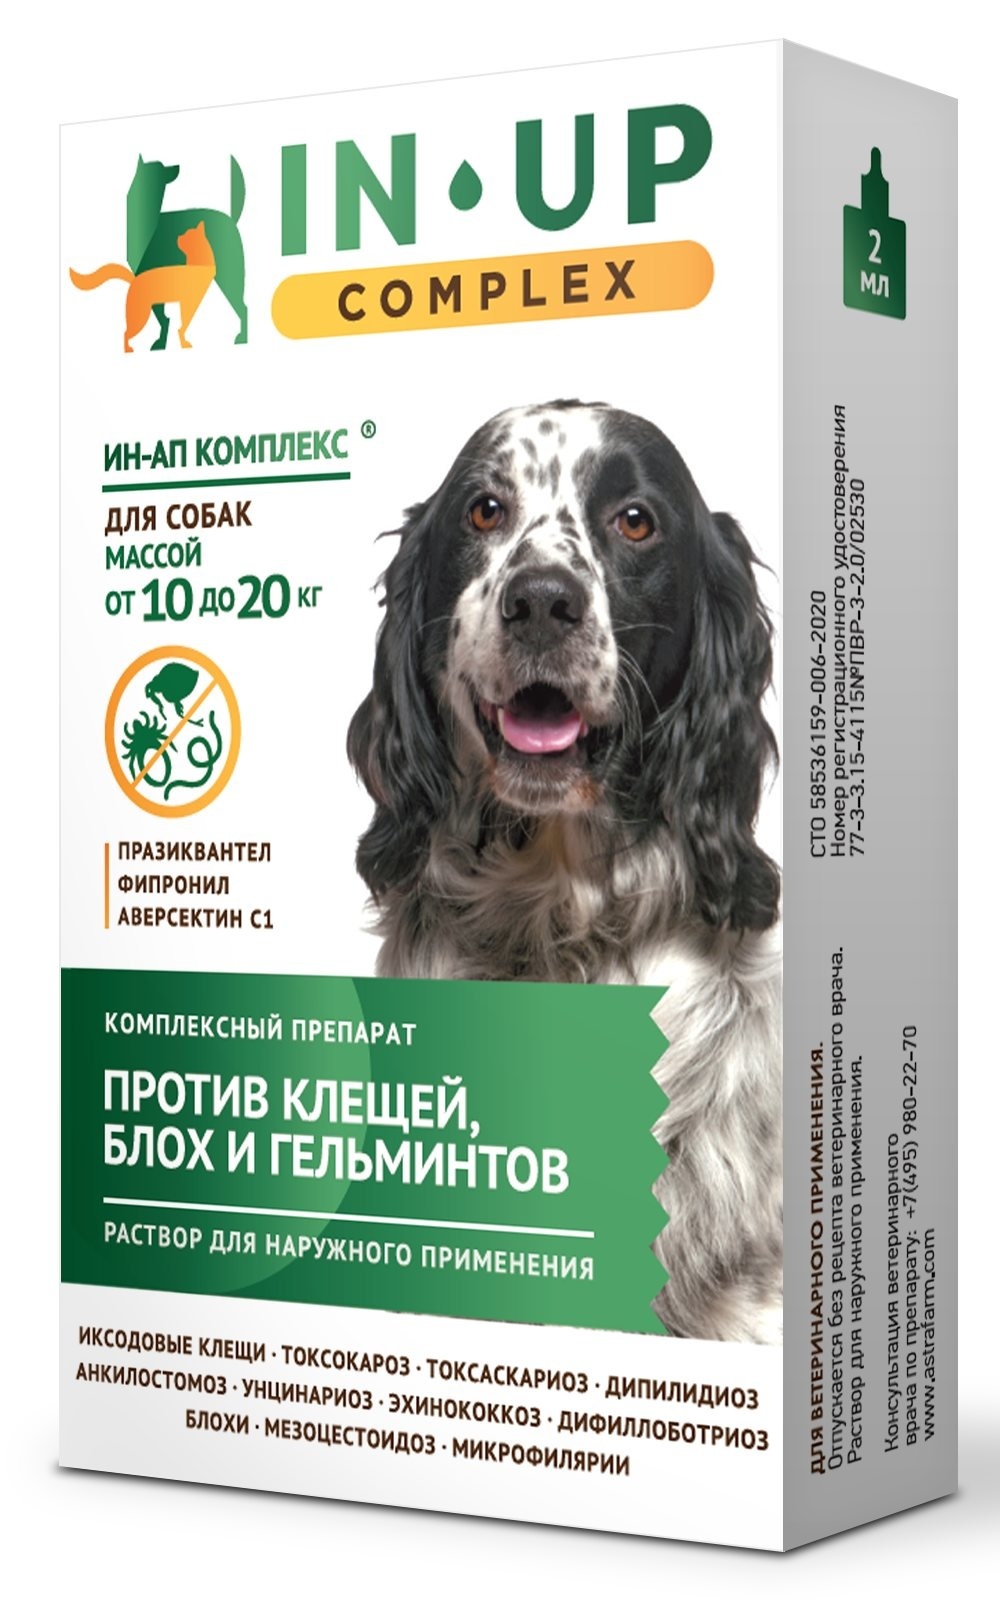 Астрафарм иН-АП комплекс для собак массой от 10 до 20 кг против блох, клещей, вшей, власоедов и гельминтов (22 г) - фото 1